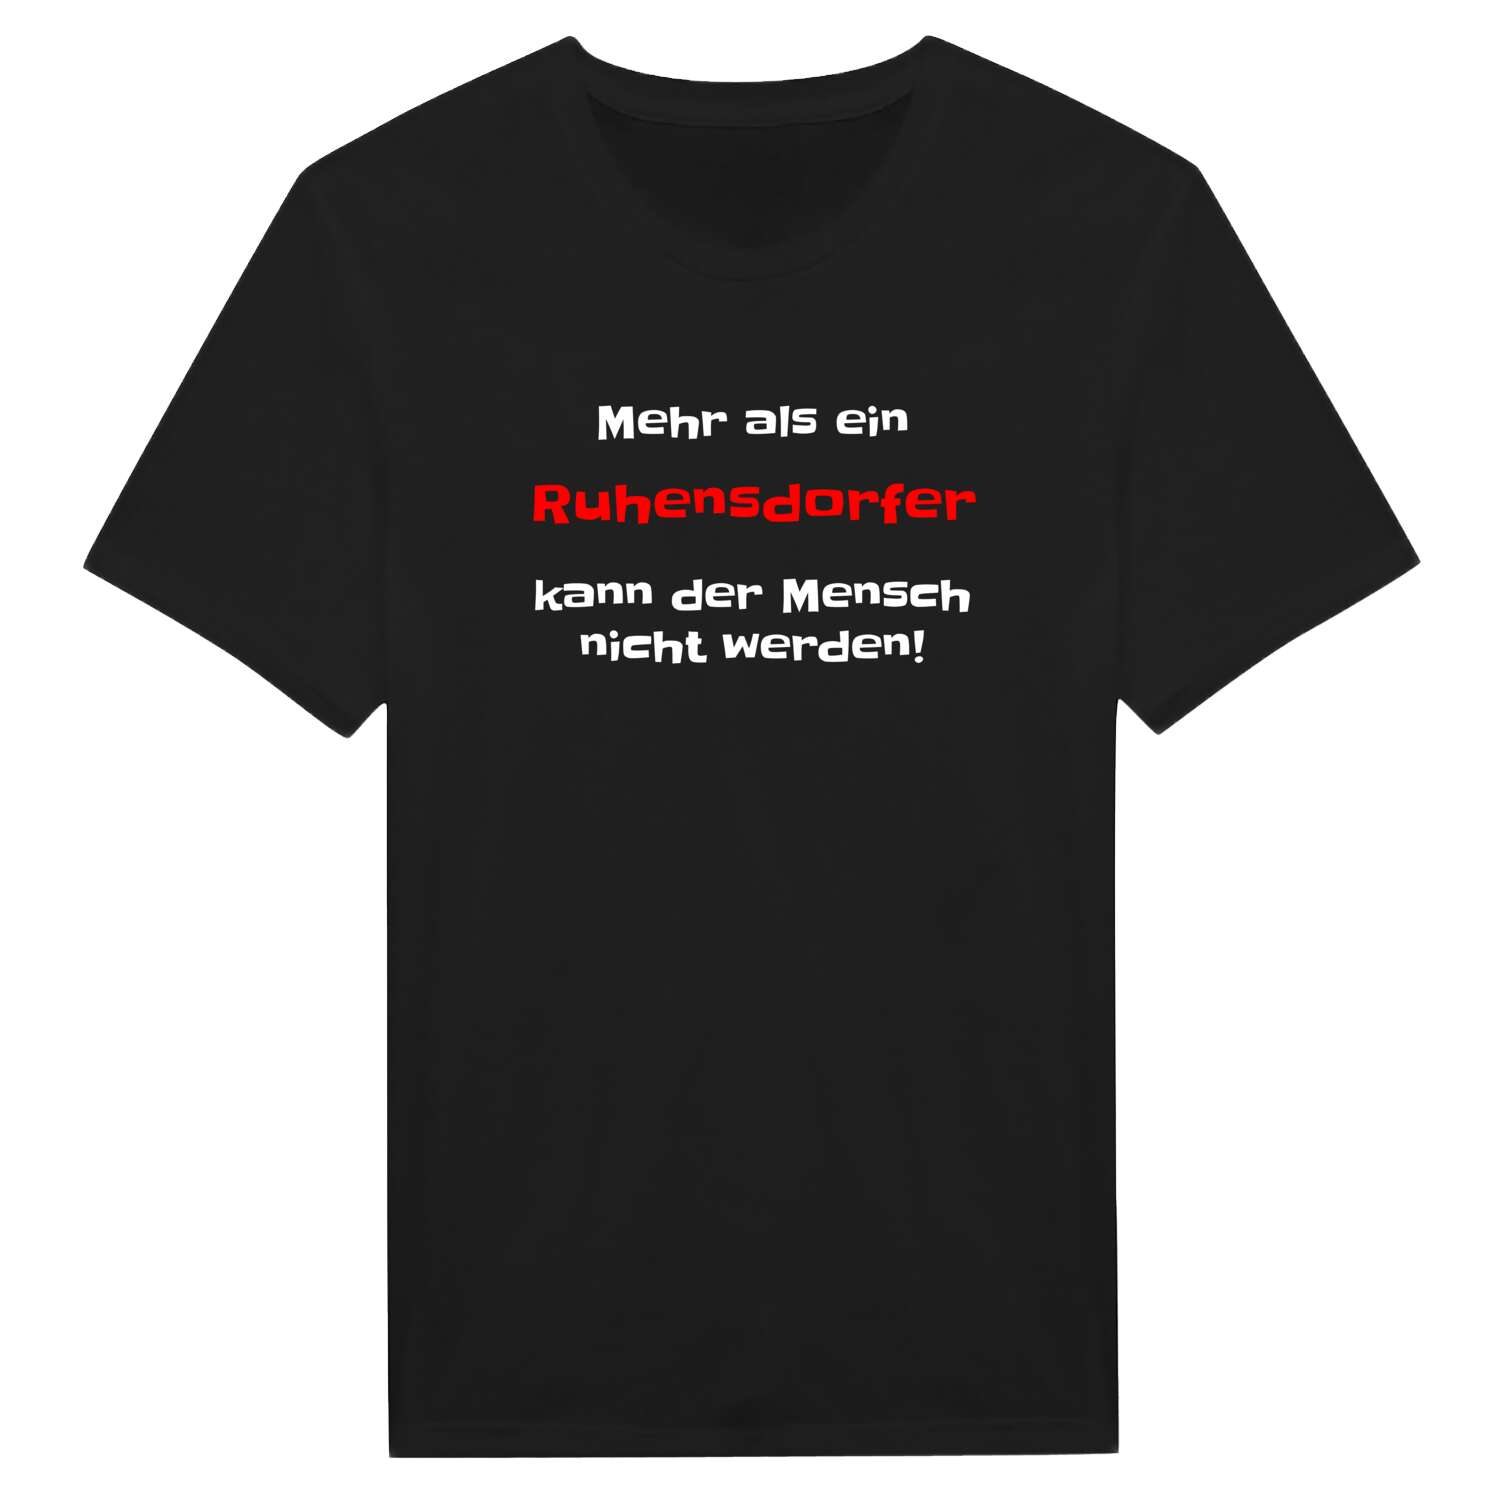 Ruhensdorf T-Shirt »Mehr als ein«